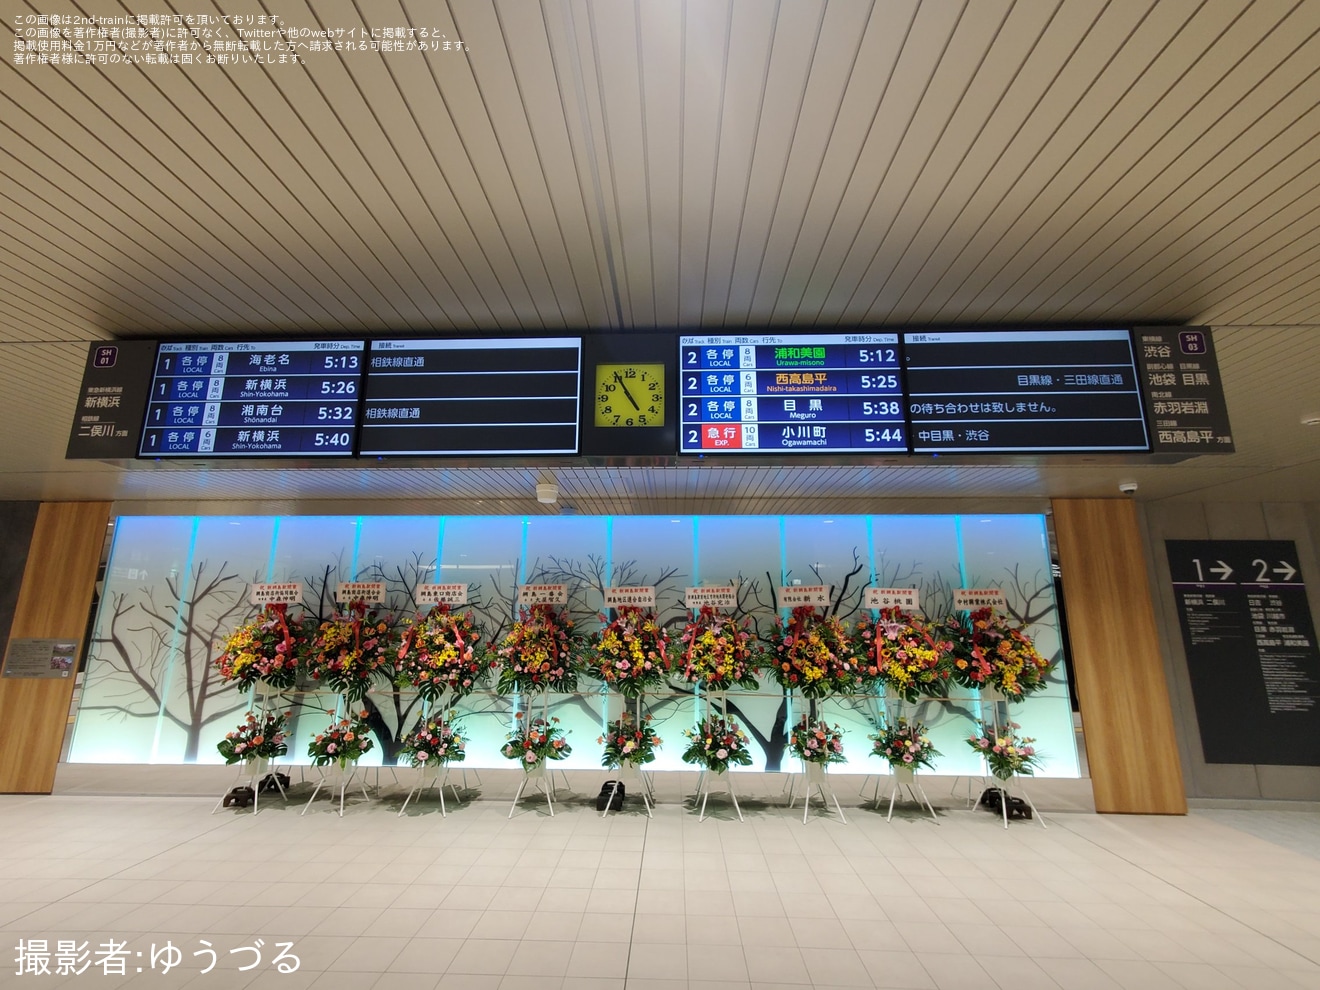 【東急】東急新横浜線の新綱島駅が開業の拡大写真